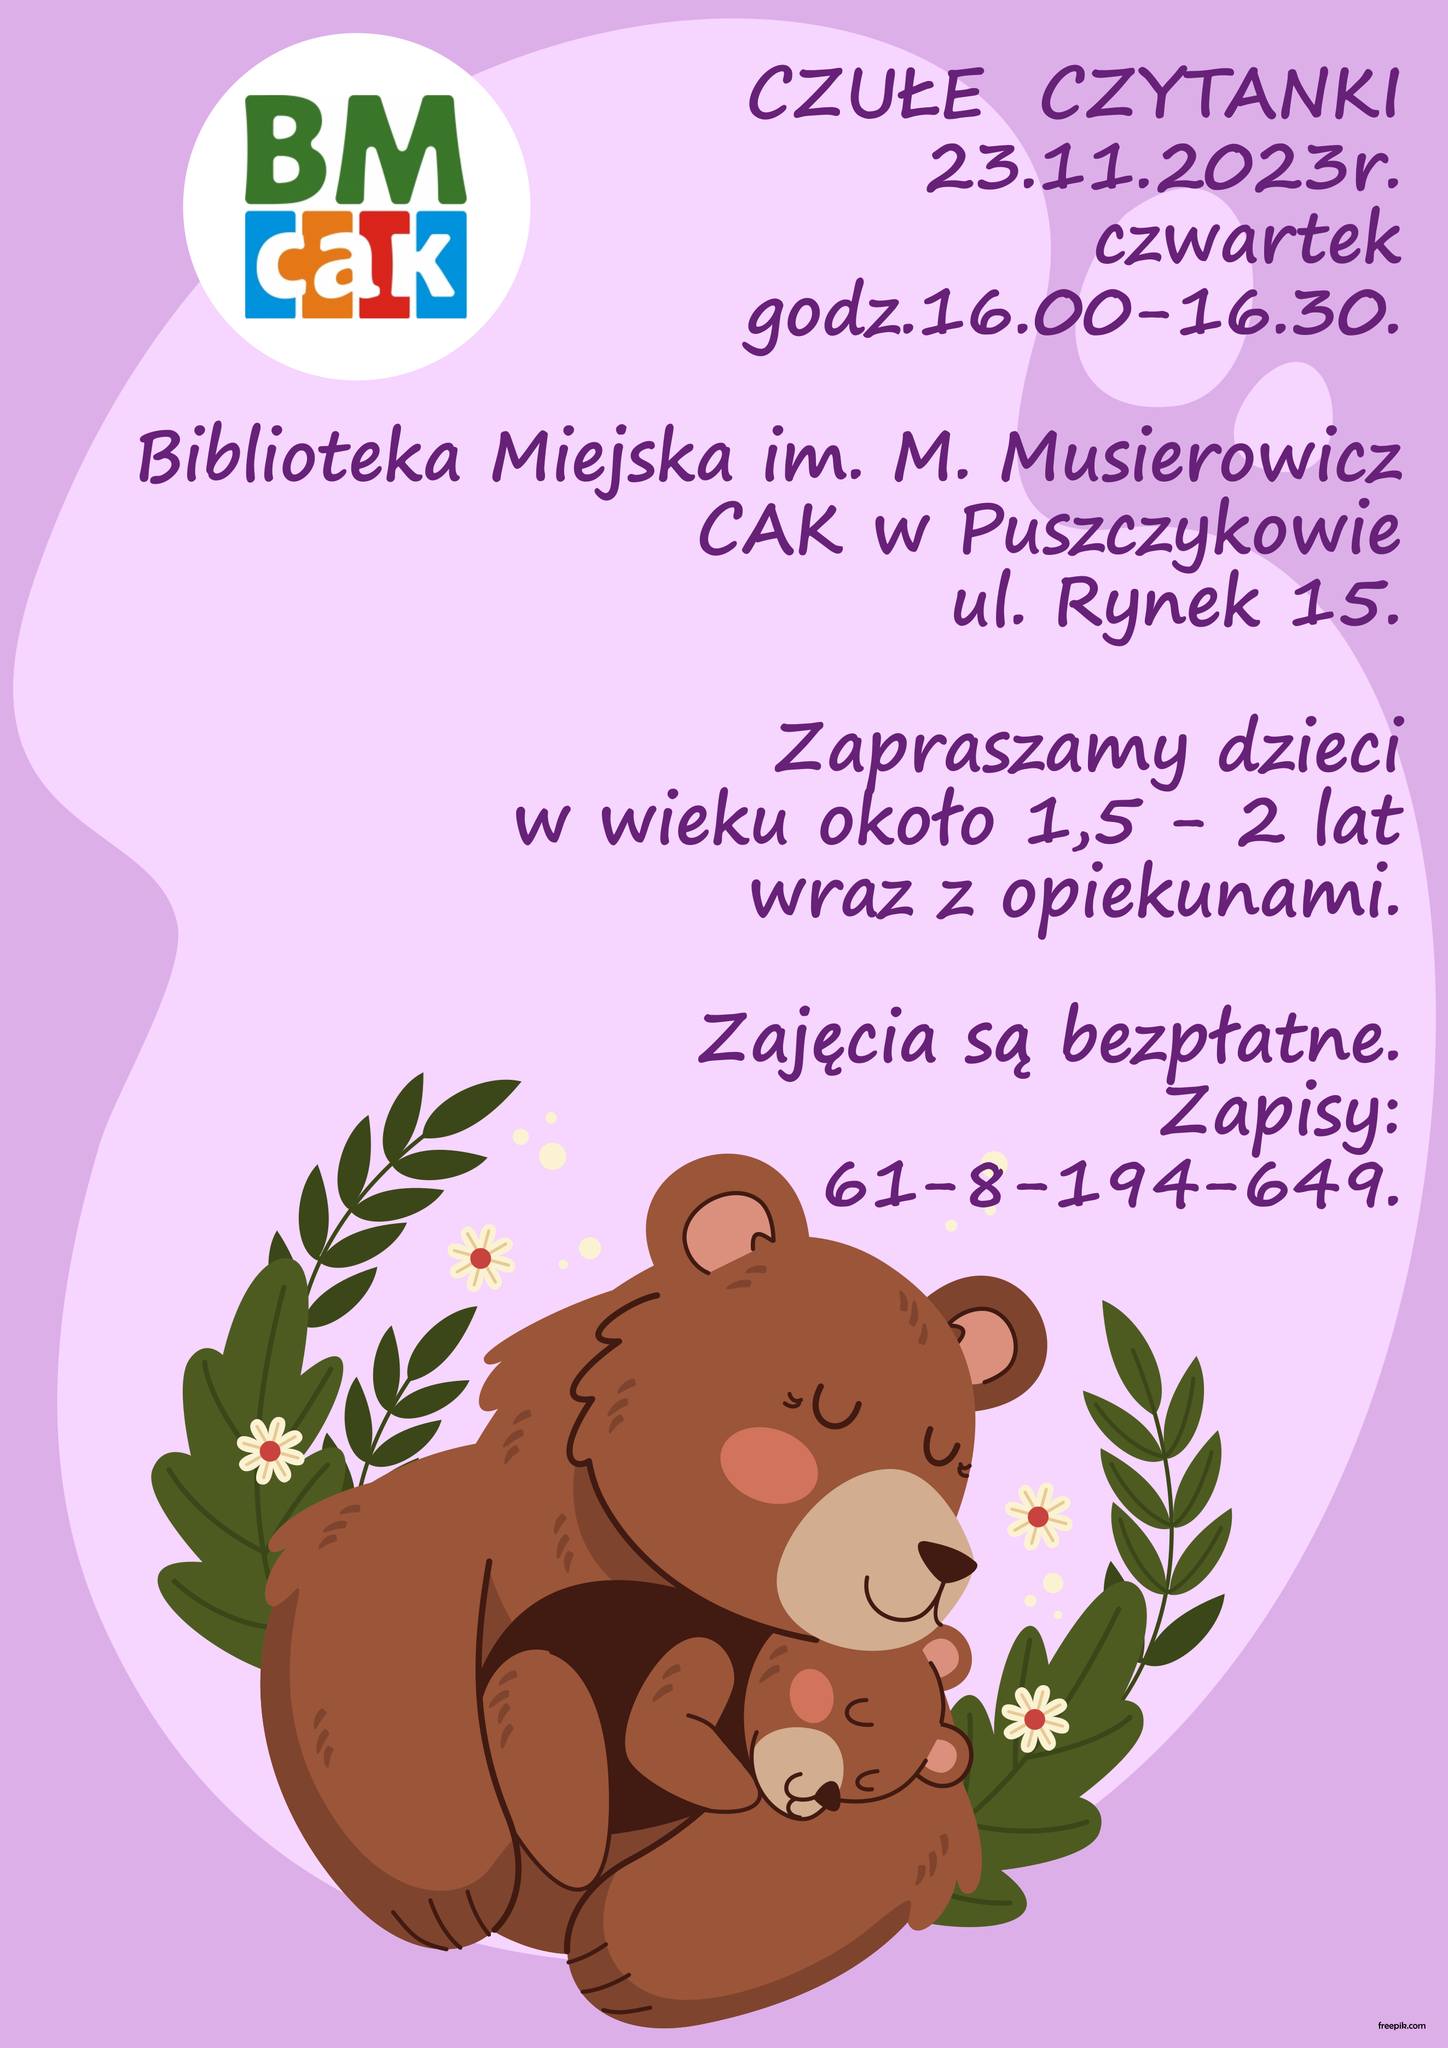 Biblioteka Miejska w Puszczykowie zaprasza na Czułe Czytanki, czyli spotkanie dla najmłodszych czytelników wraz z opiekunami.